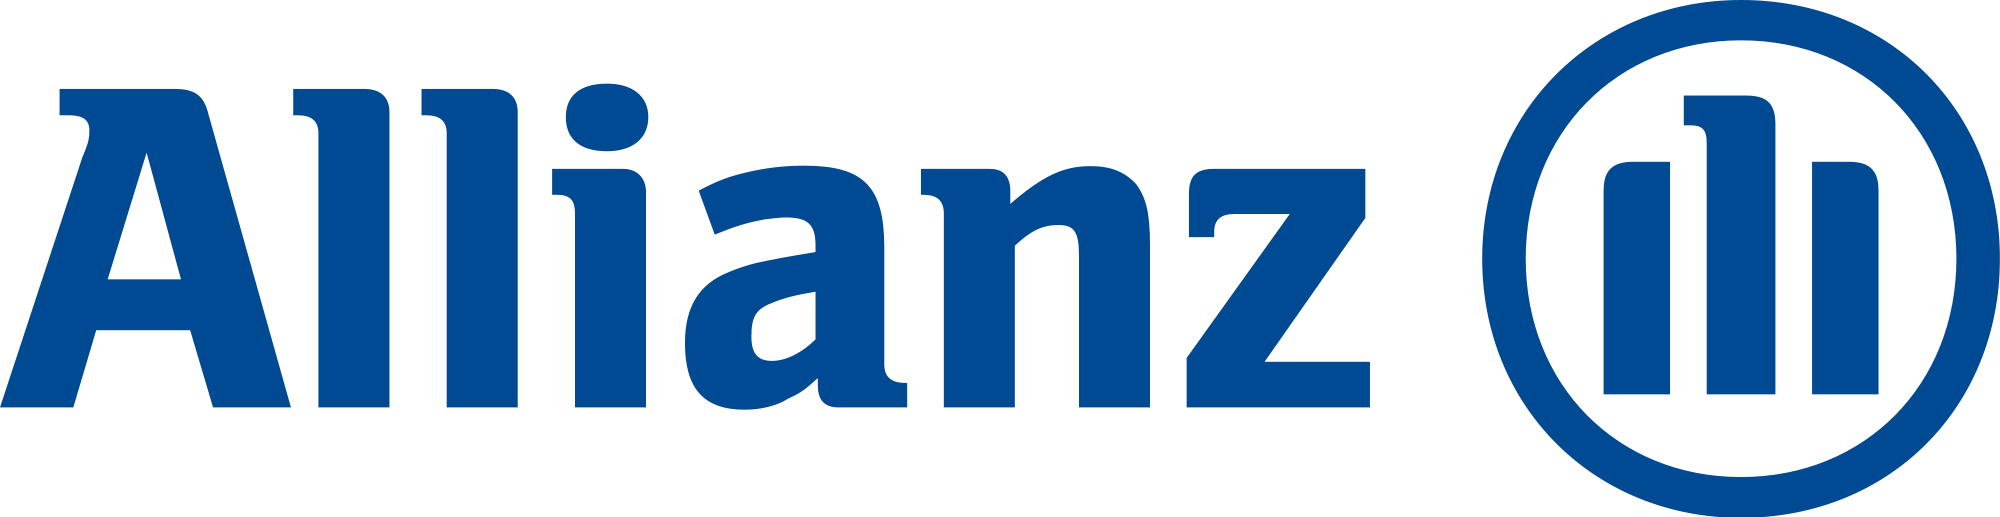 allianz logo - Allianz Logo